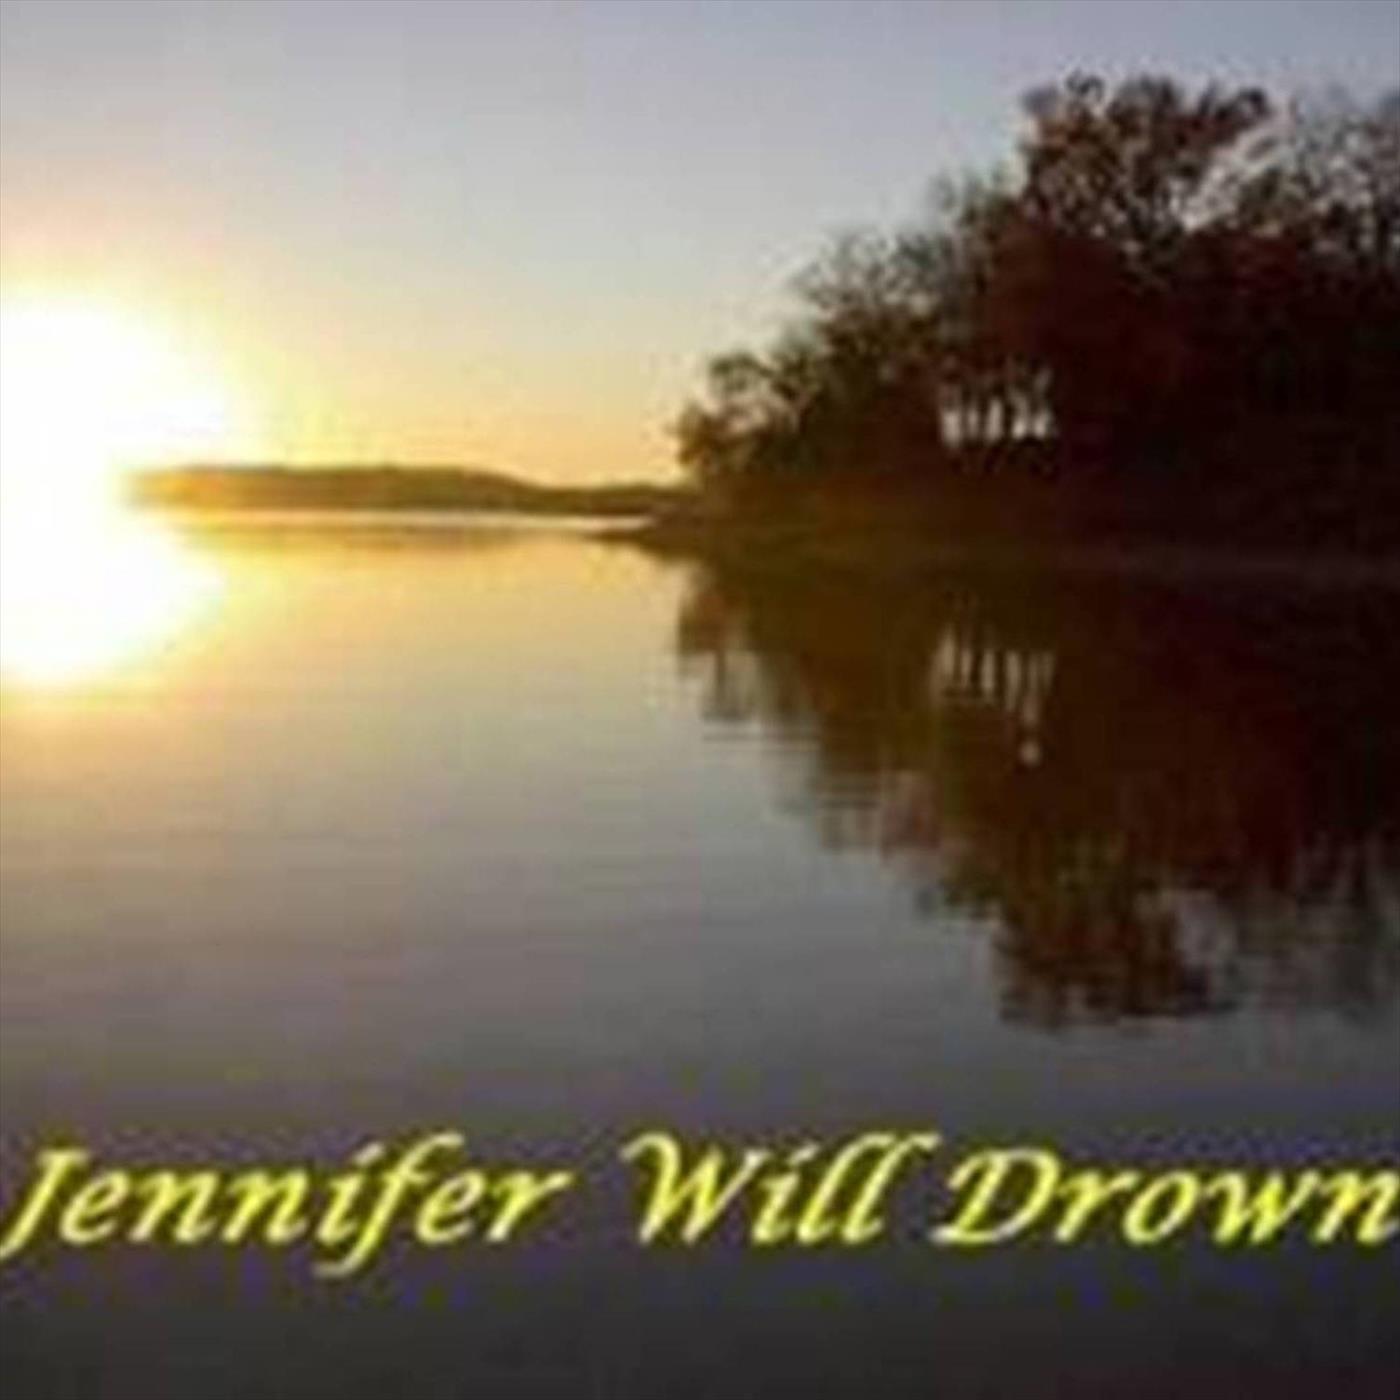 Jennifer Will Drown